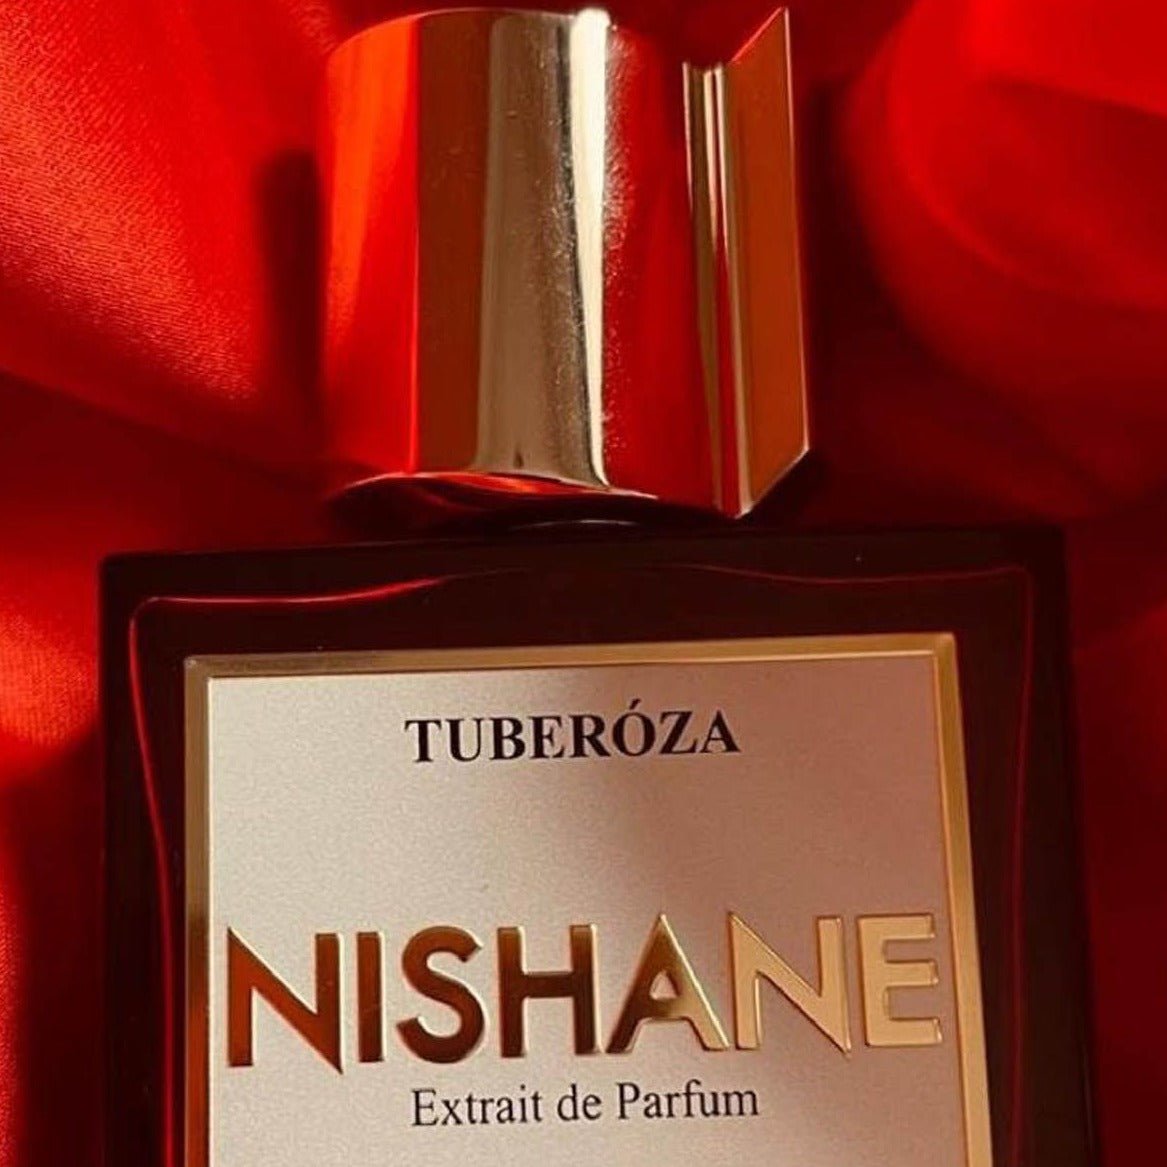 Nishane Tuberoza Hand Cream | My Perfume Shop Australia